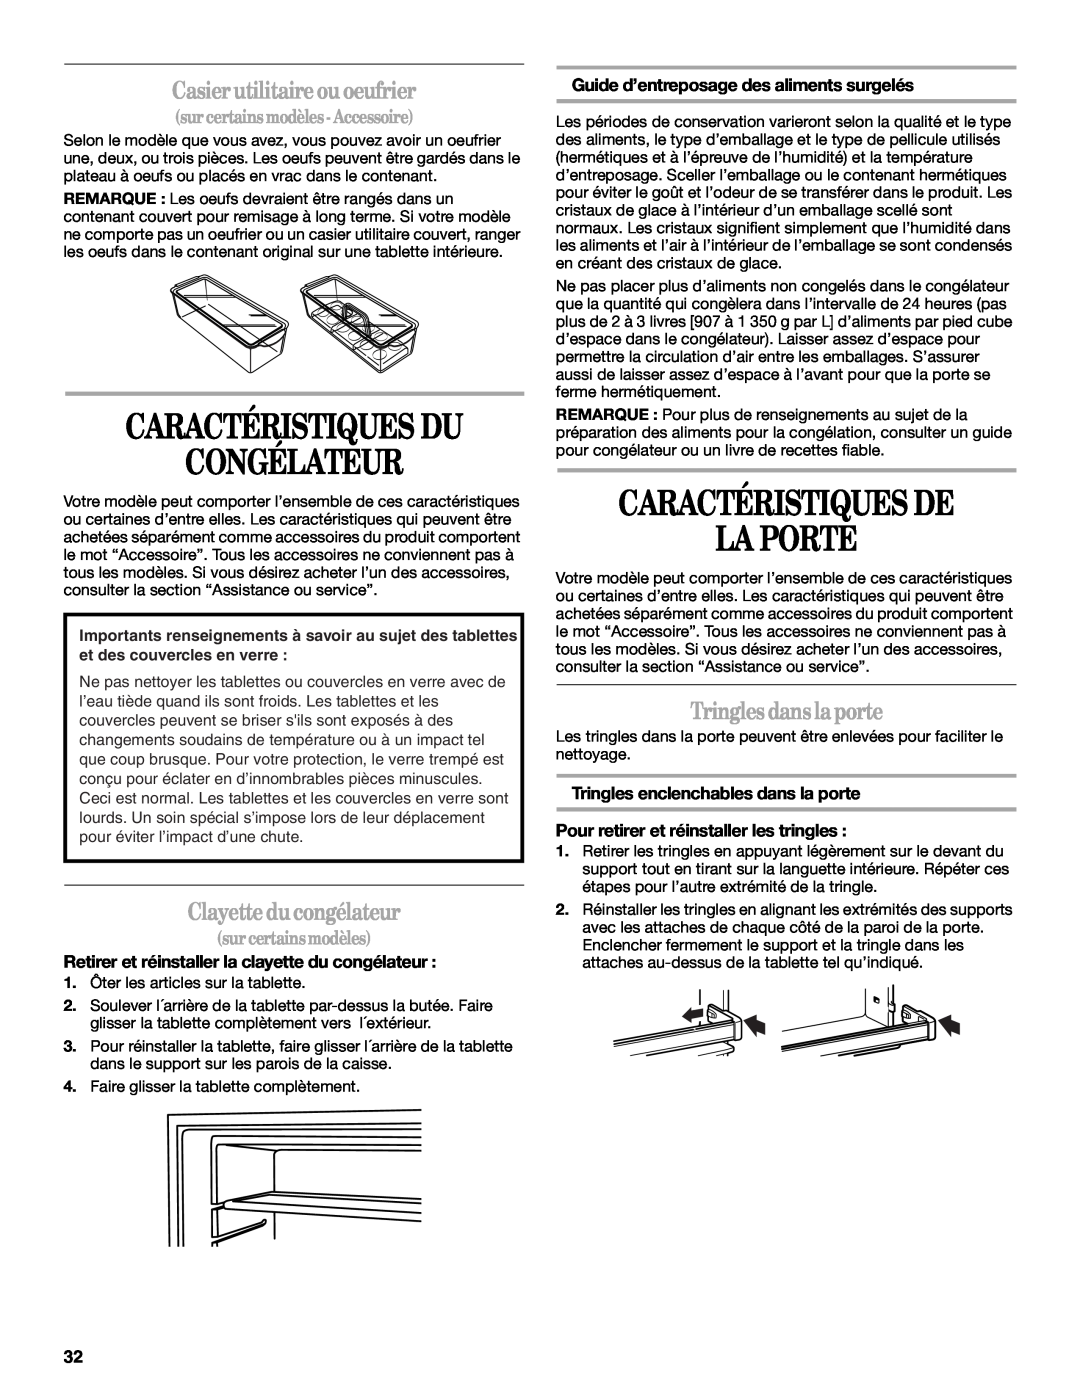 Amana W10162526A manual Congélateur, Caractéristiques De La Porte, Casier utilitaireou oeufrier, Clayette ducongélateur 